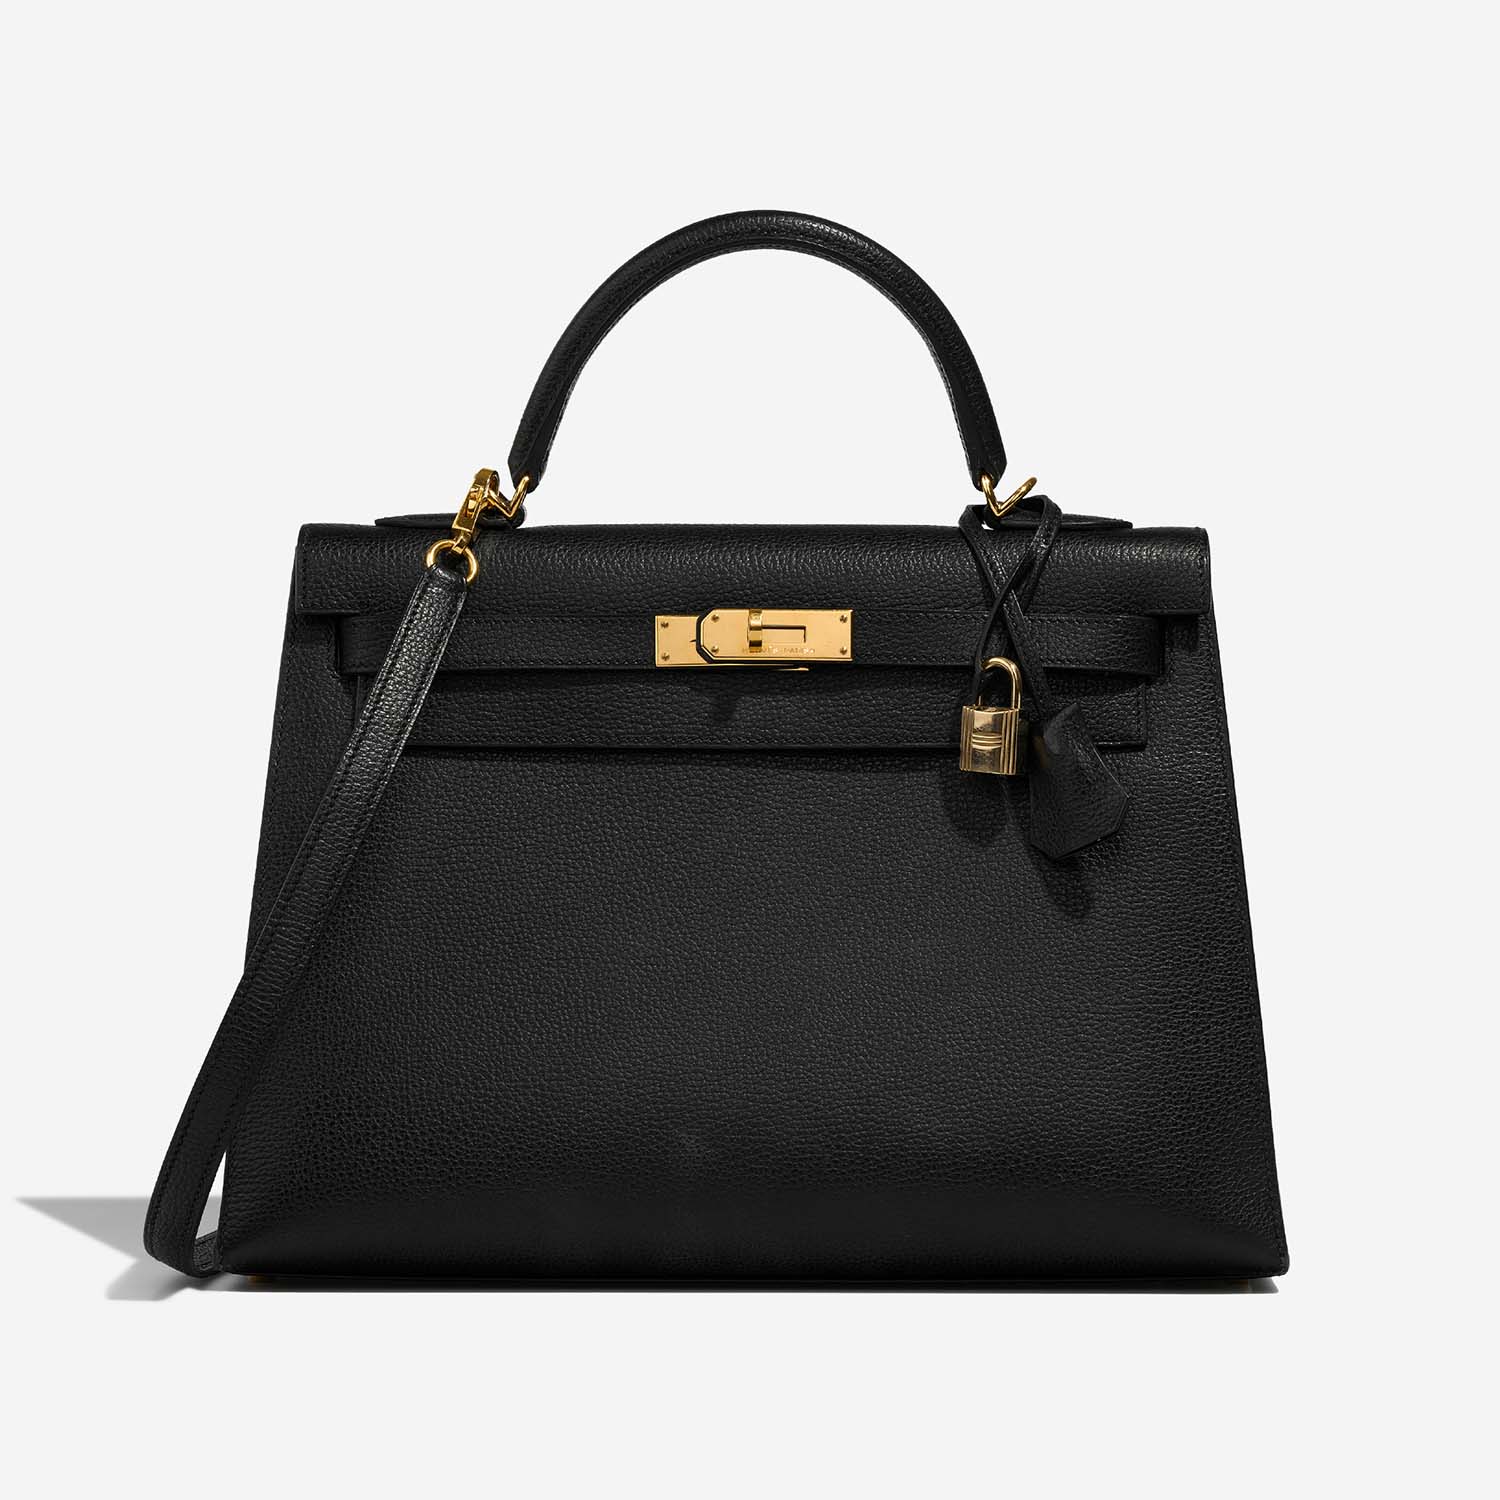 Hermès Kelly 32 Black Front | Verkaufen Sie Ihre Designer-Tasche auf Saclab.com